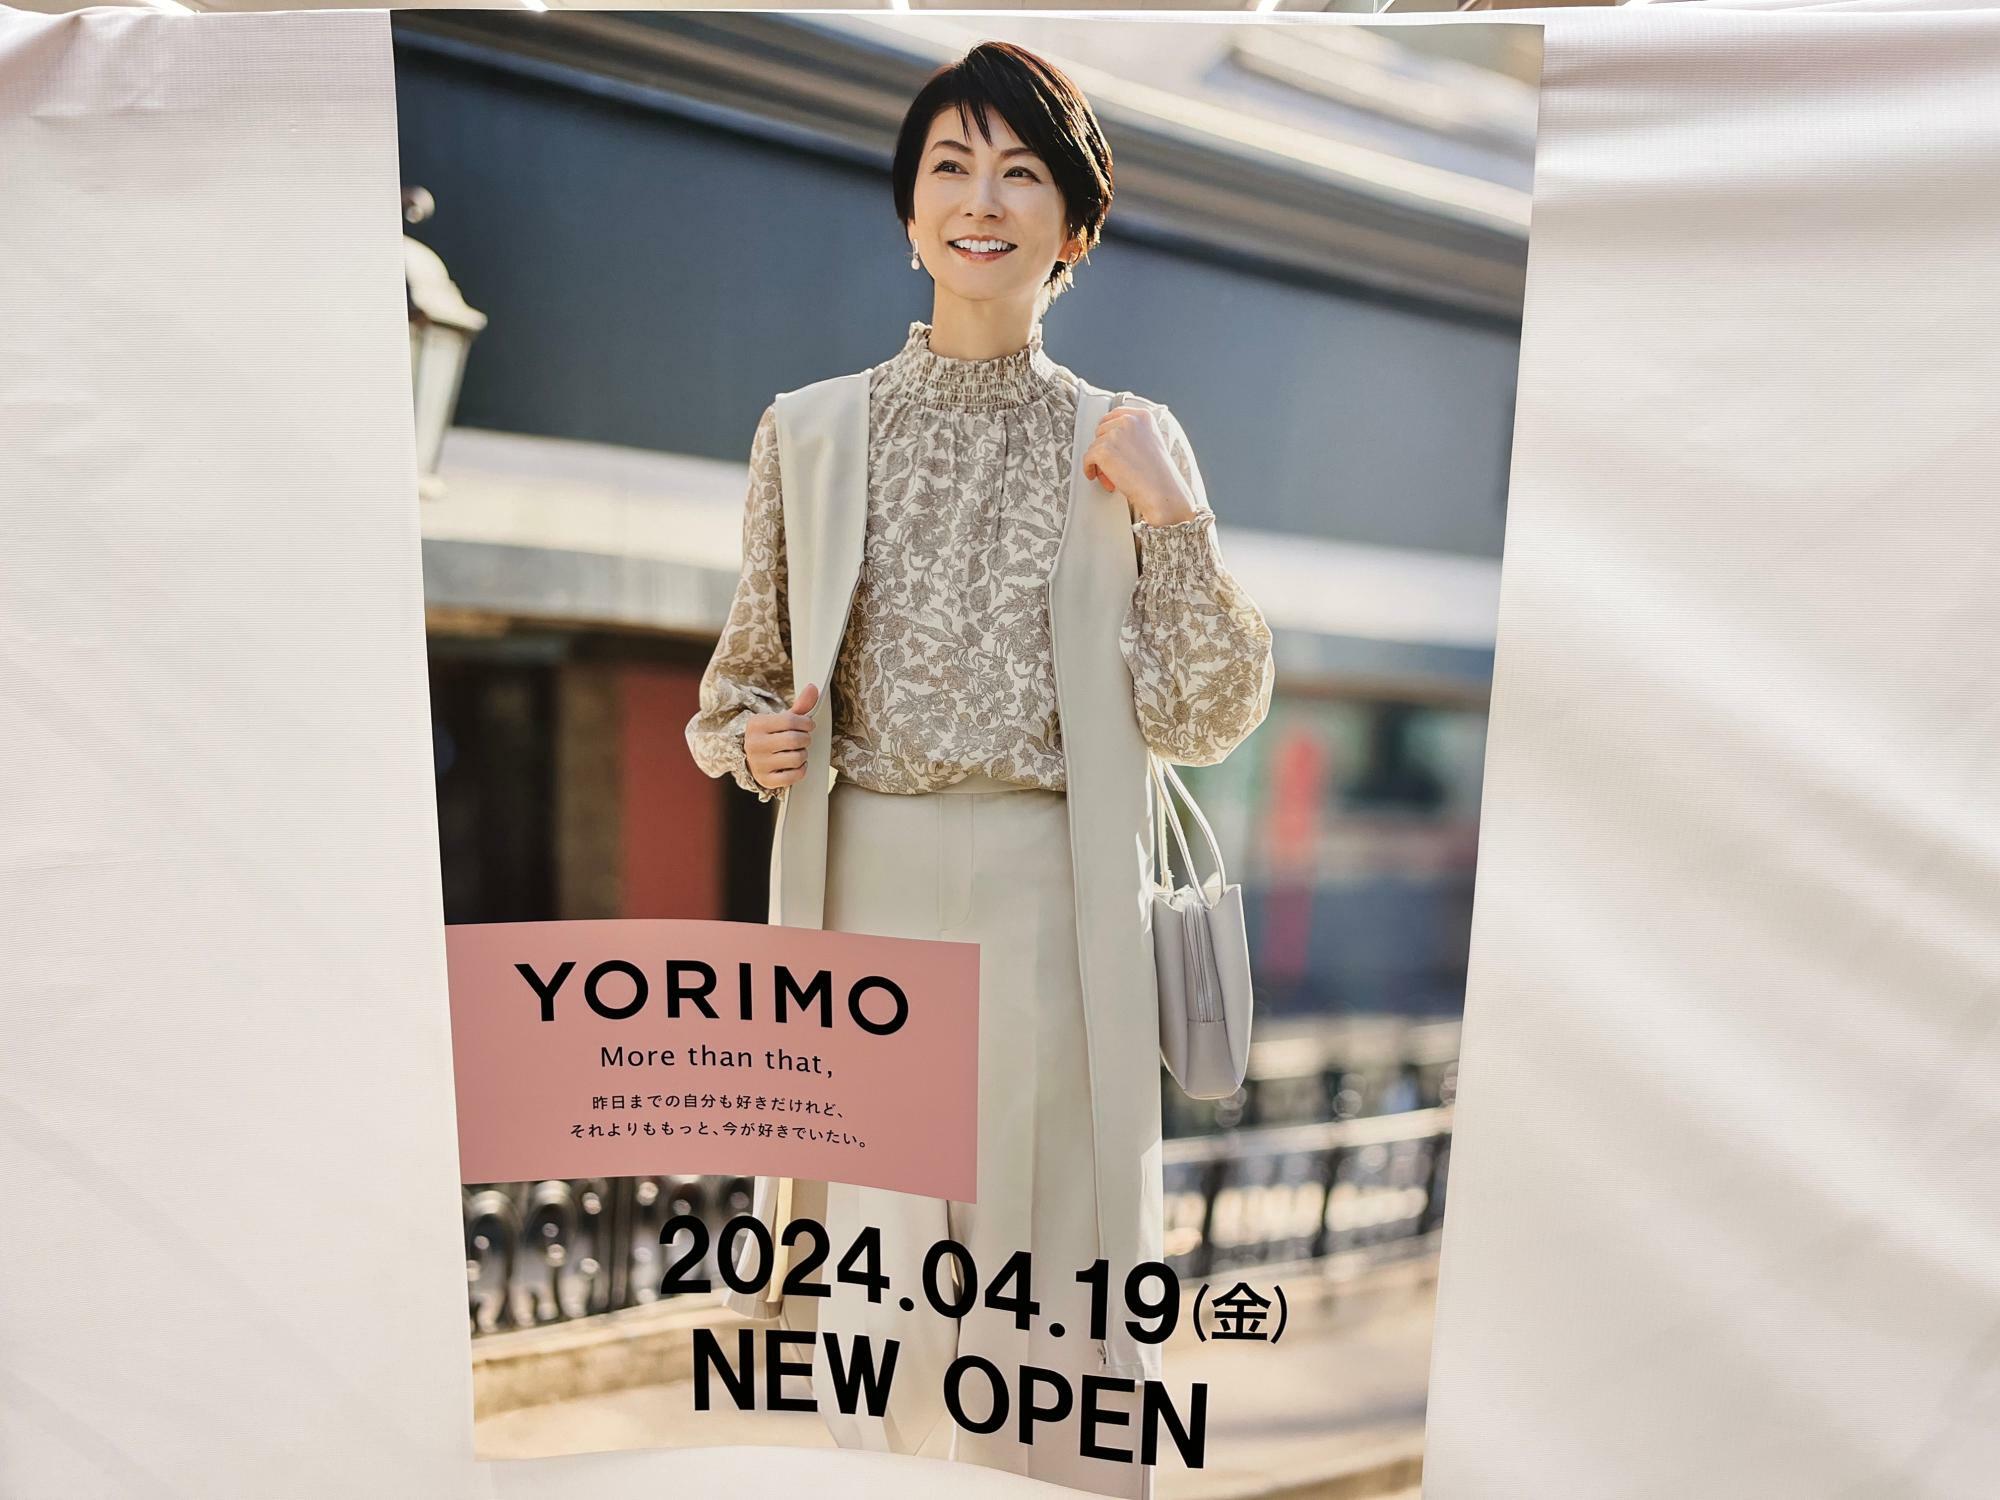 「YORIMO」オープン告知のポスター